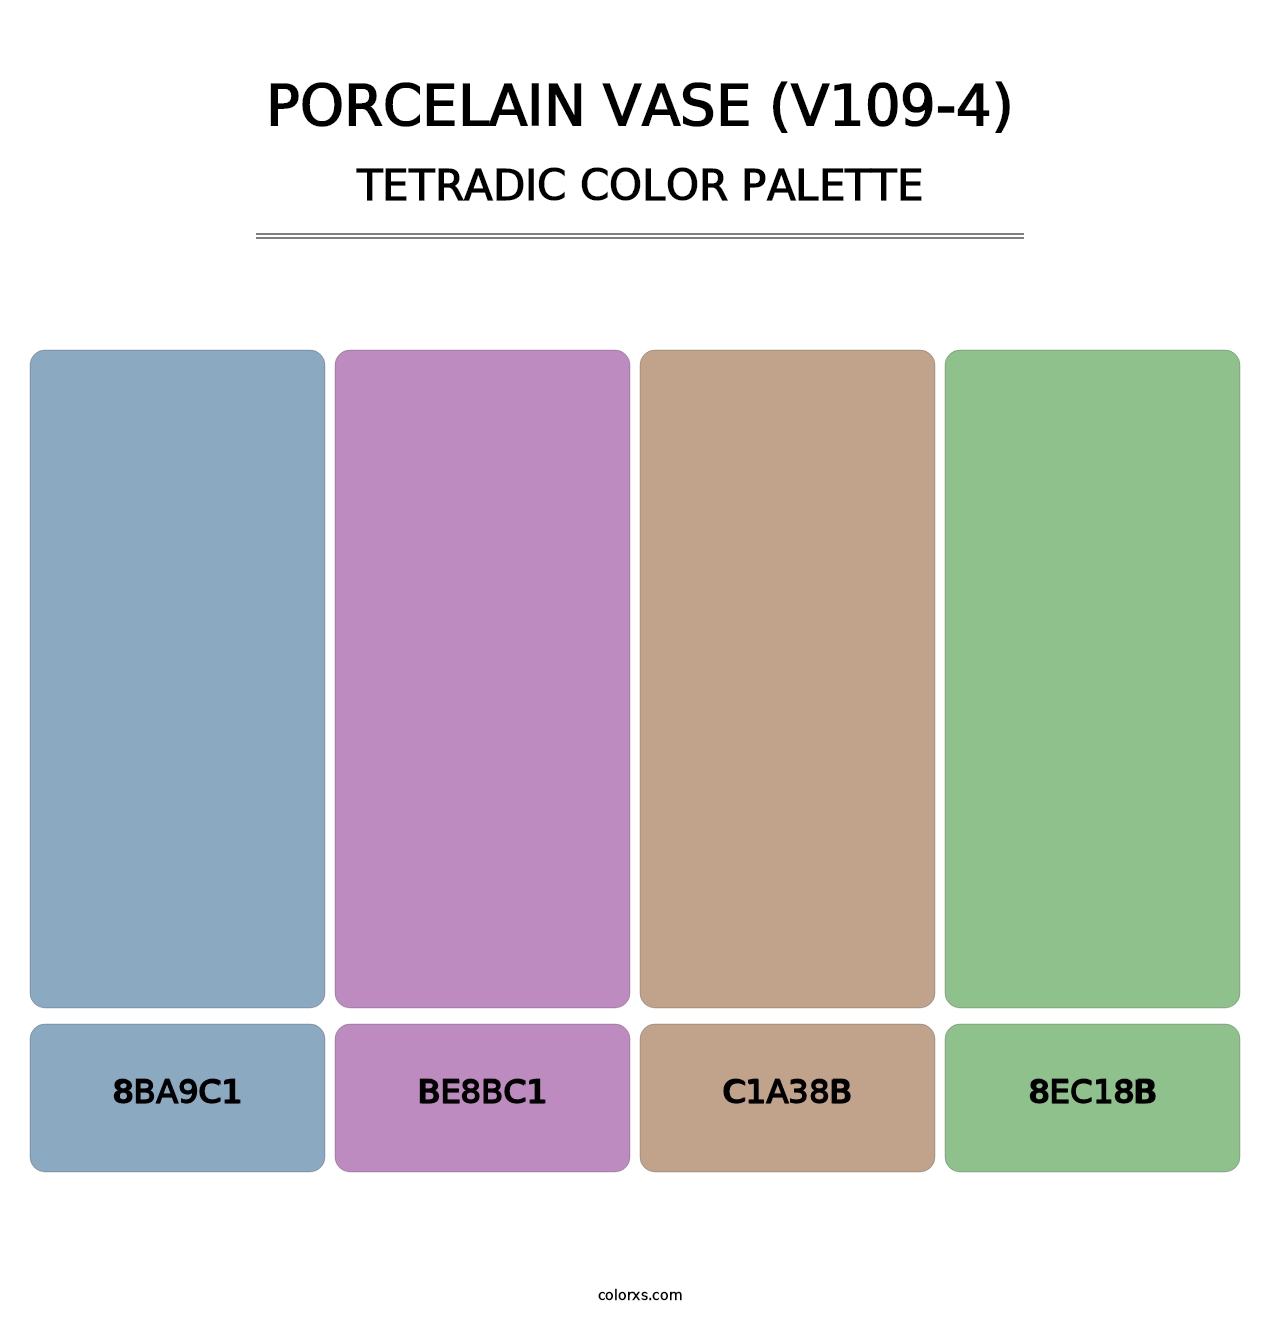 Porcelain Vase (V109-4) - Tetradic Color Palette